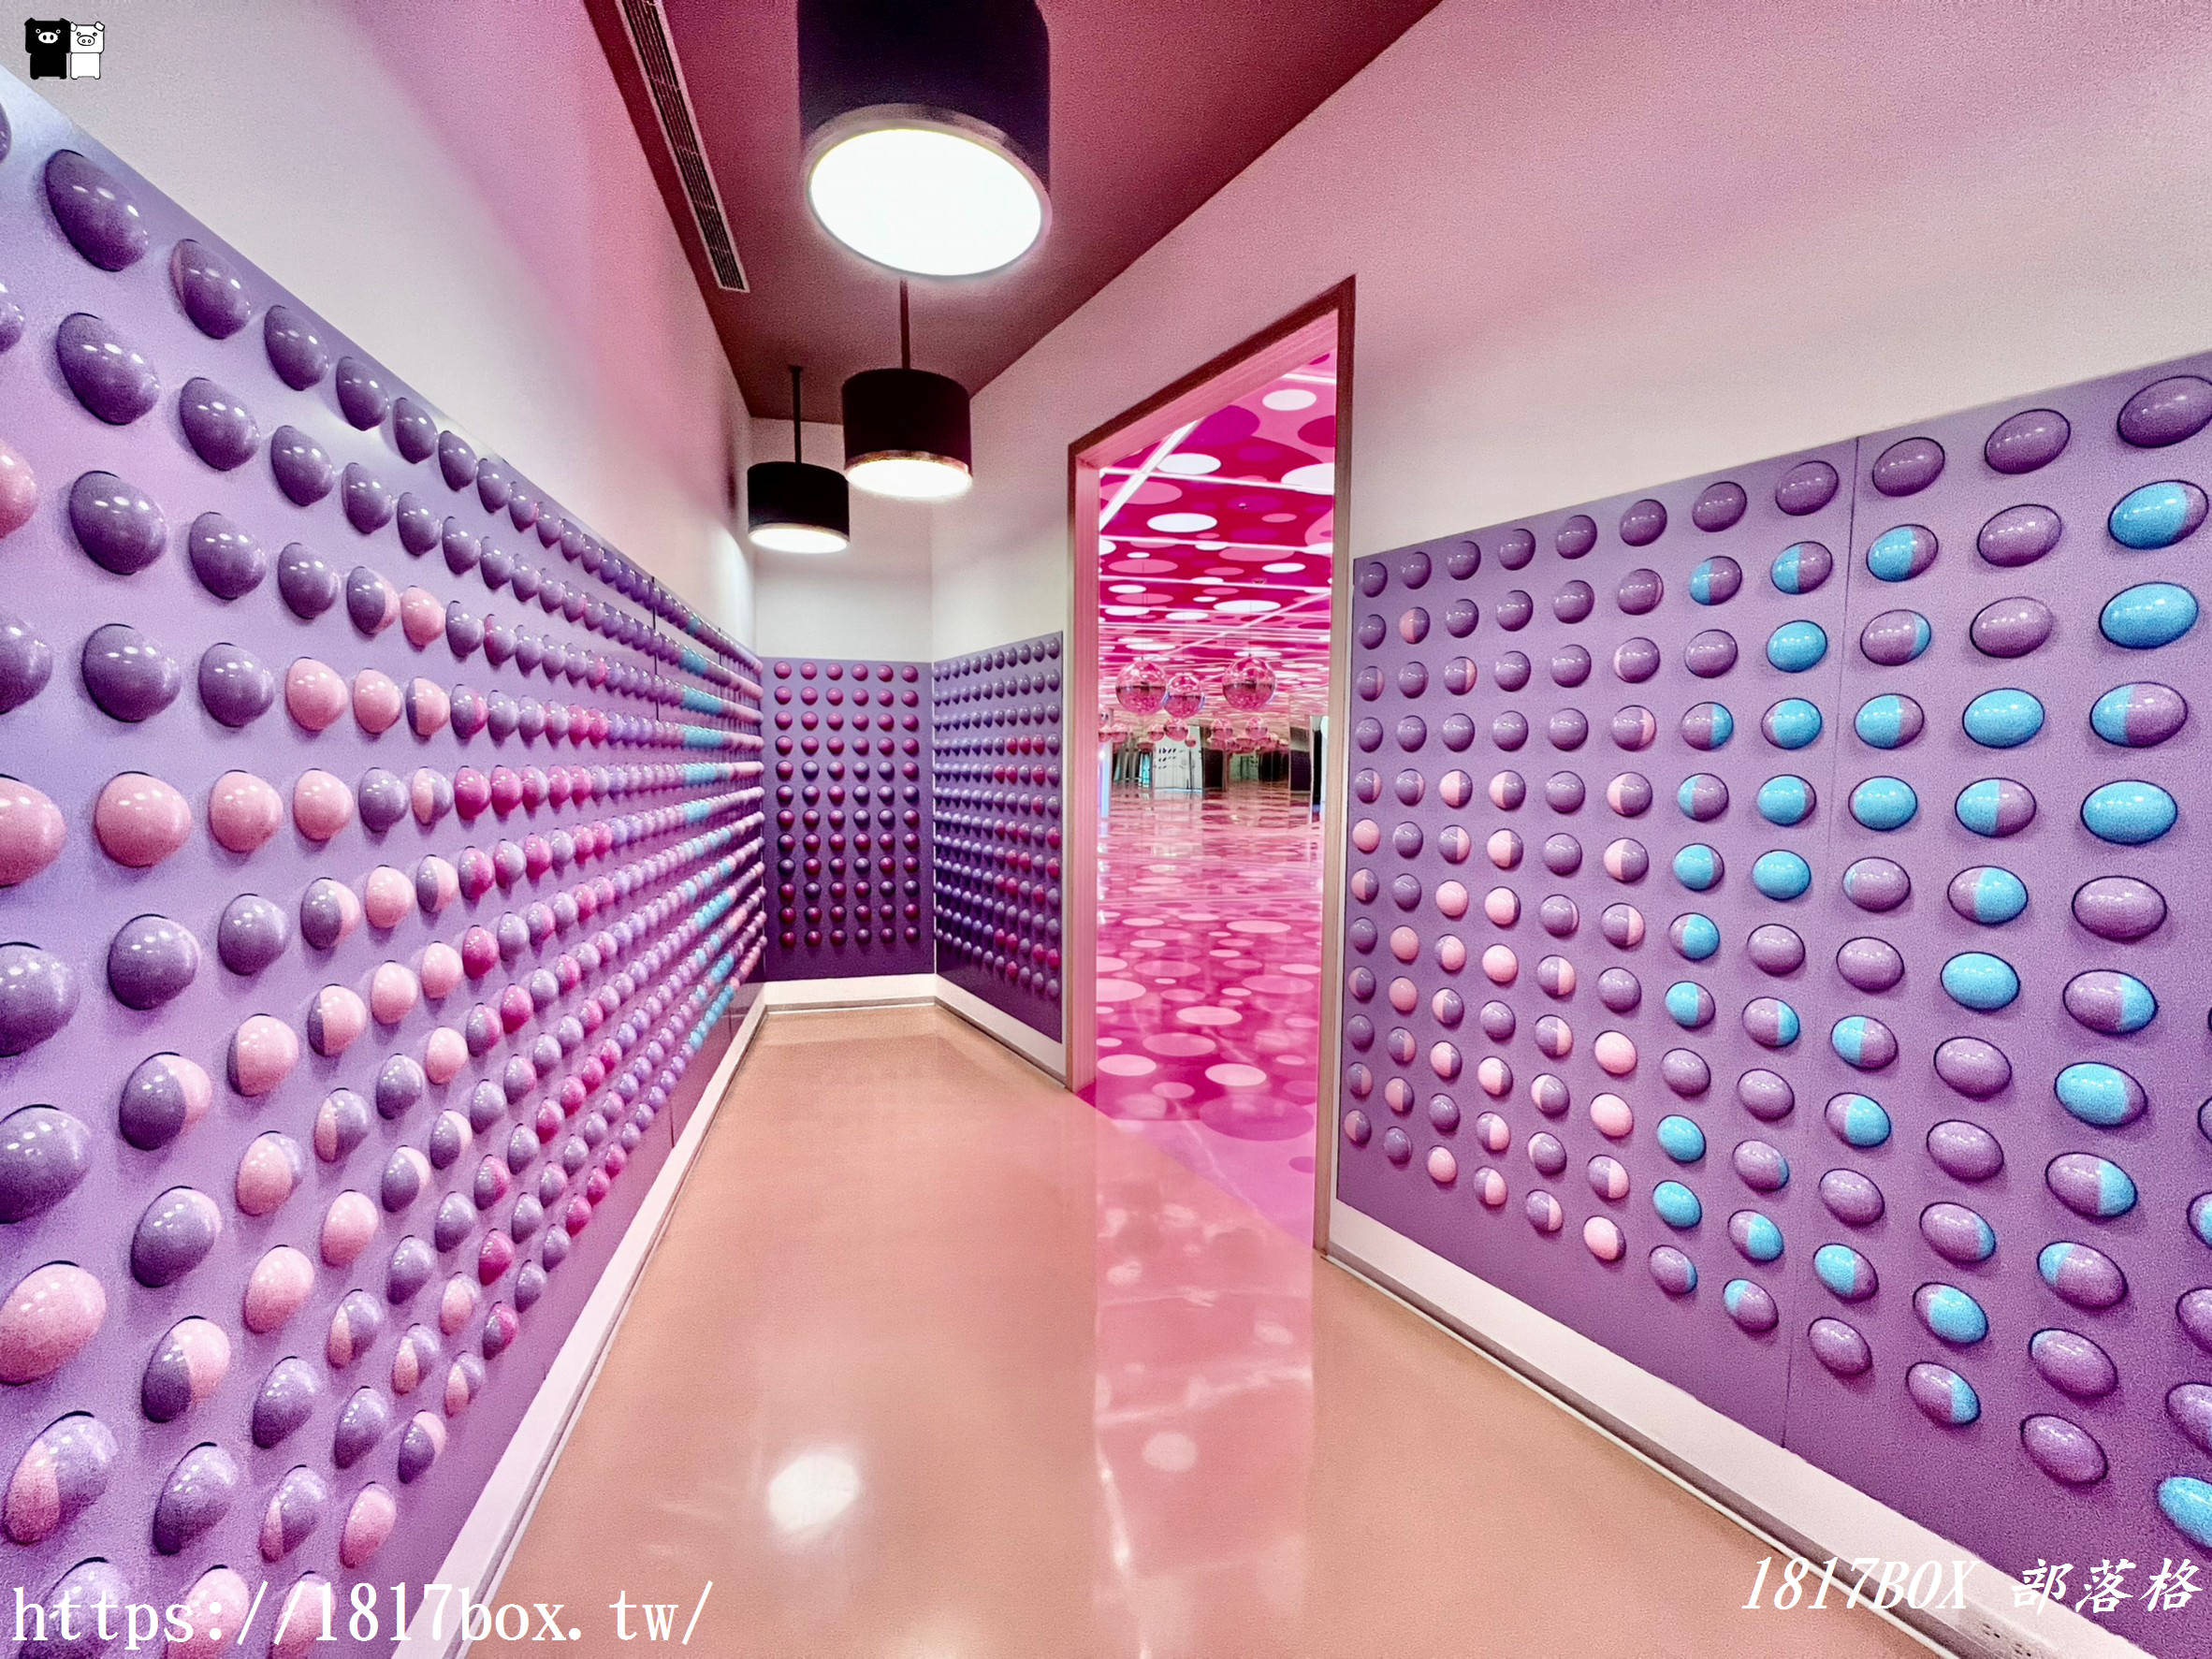 【宜蘭市】煙波大飯店 宜蘭館。粉紅泡泡裝置藝術。設施服務分享篇 @1817BOX部落格